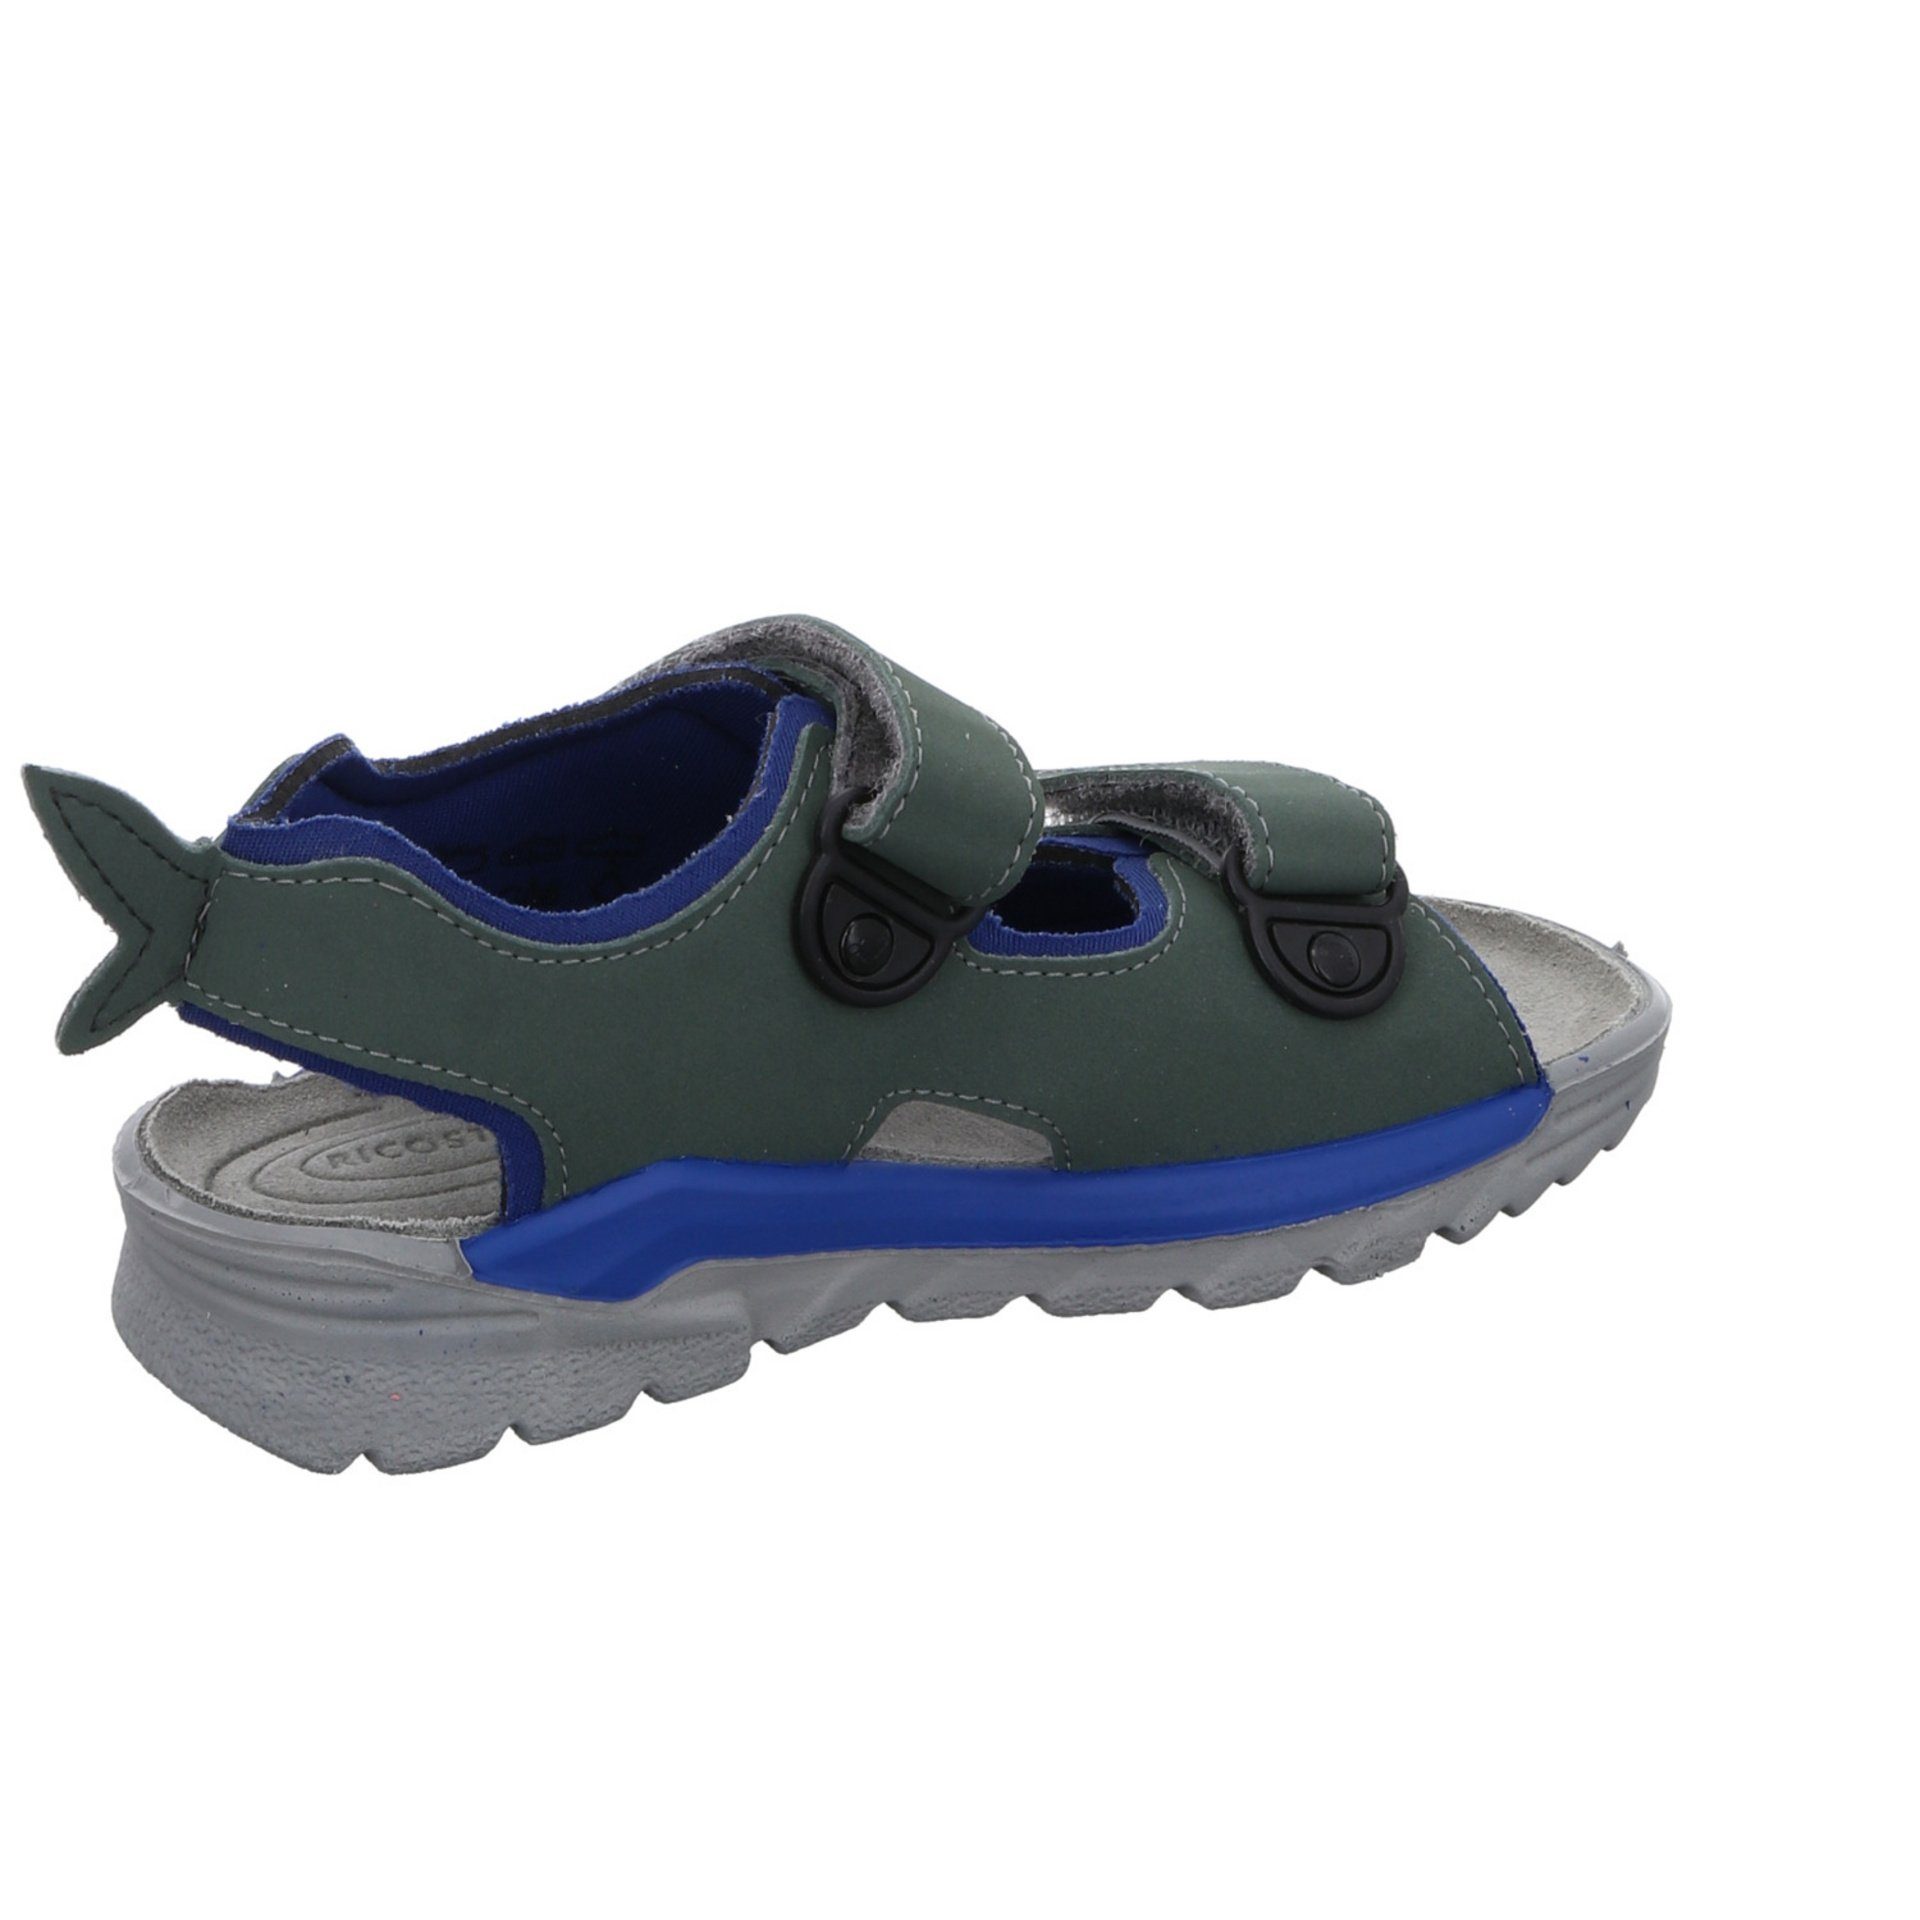 Ricosta Jungen Sandalen Schuhe grün Sandale Textil Shark Kinderschuhe Sandale